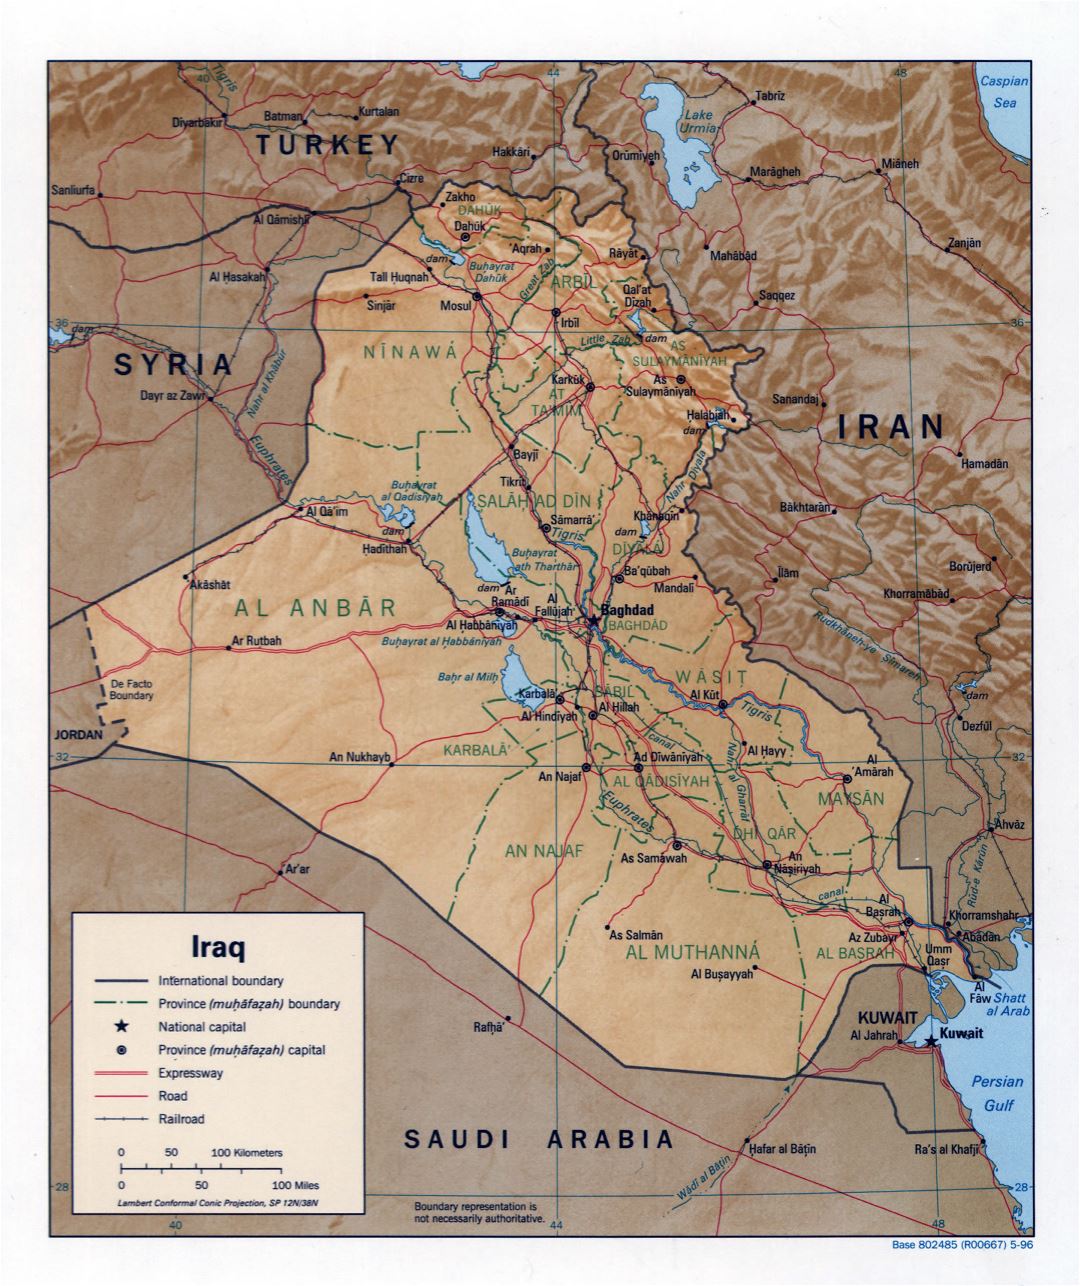 Grande detallado mapa político y administrativo de Iraq con relieve, caminos, ferrocarriles y principales ciudades - 1996